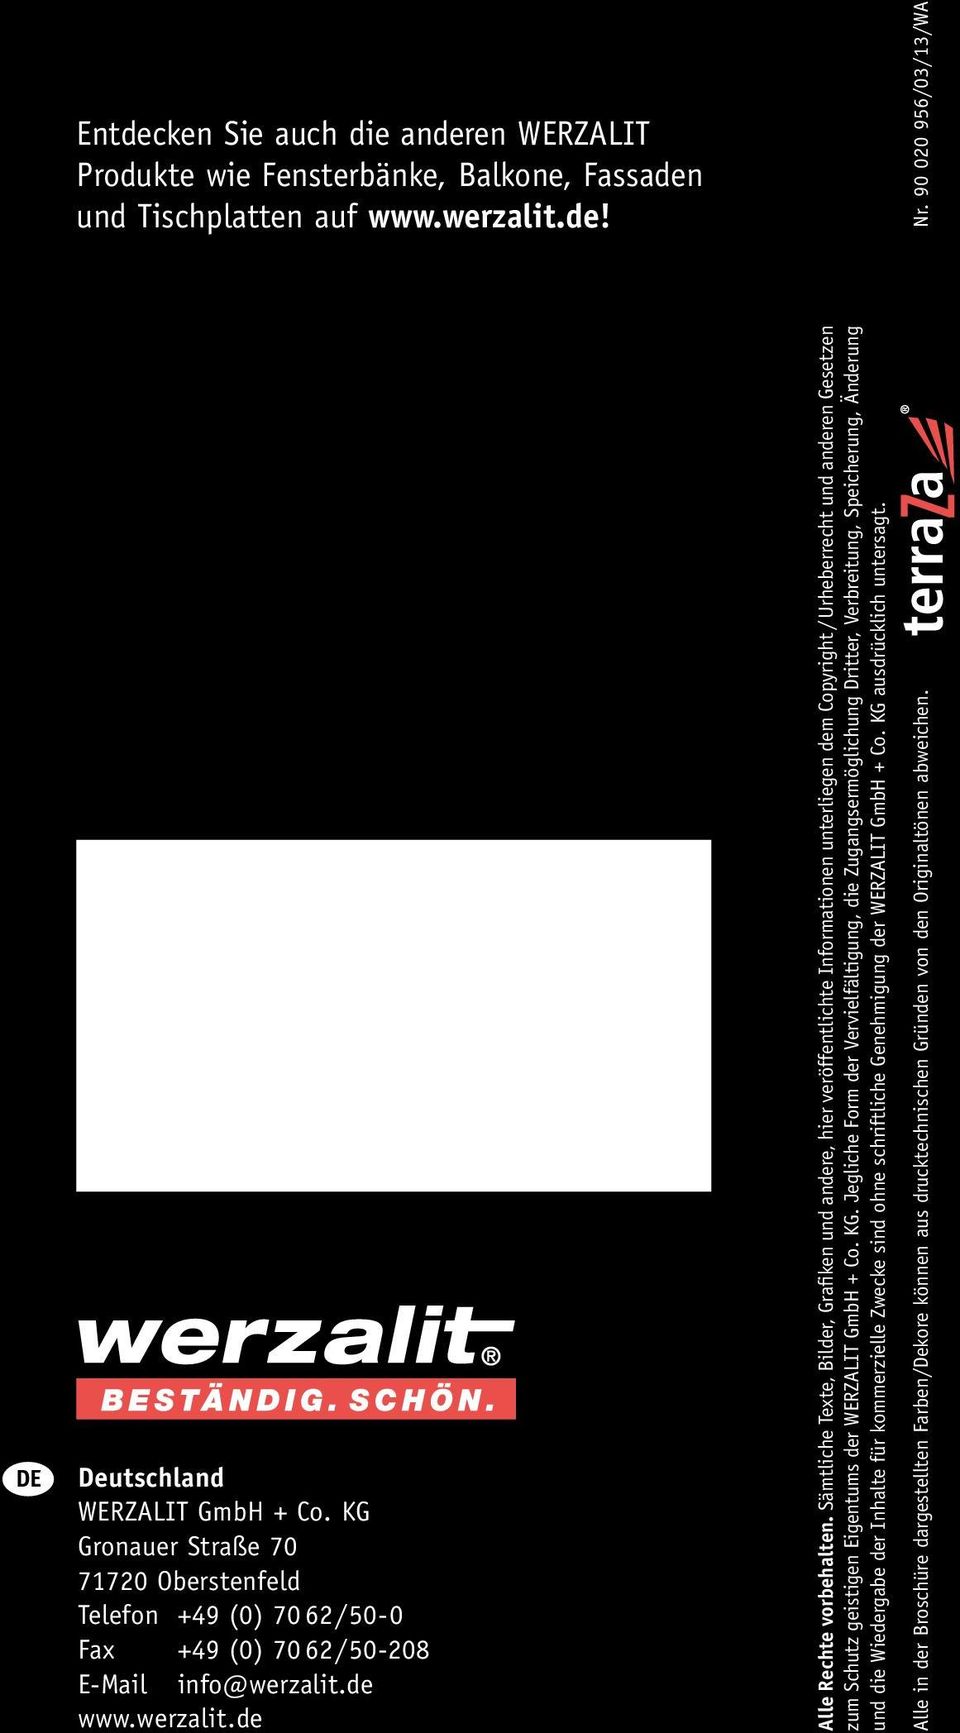 Sämtliche Texte, Bilder, Grafiken und andere, hier veröffentlichte Informationen unterliegen dem Copyright / Urheberrecht und anderen Gesetzen zum Schutz geistigen Eigentums der WERZALIT GmbH + Co.